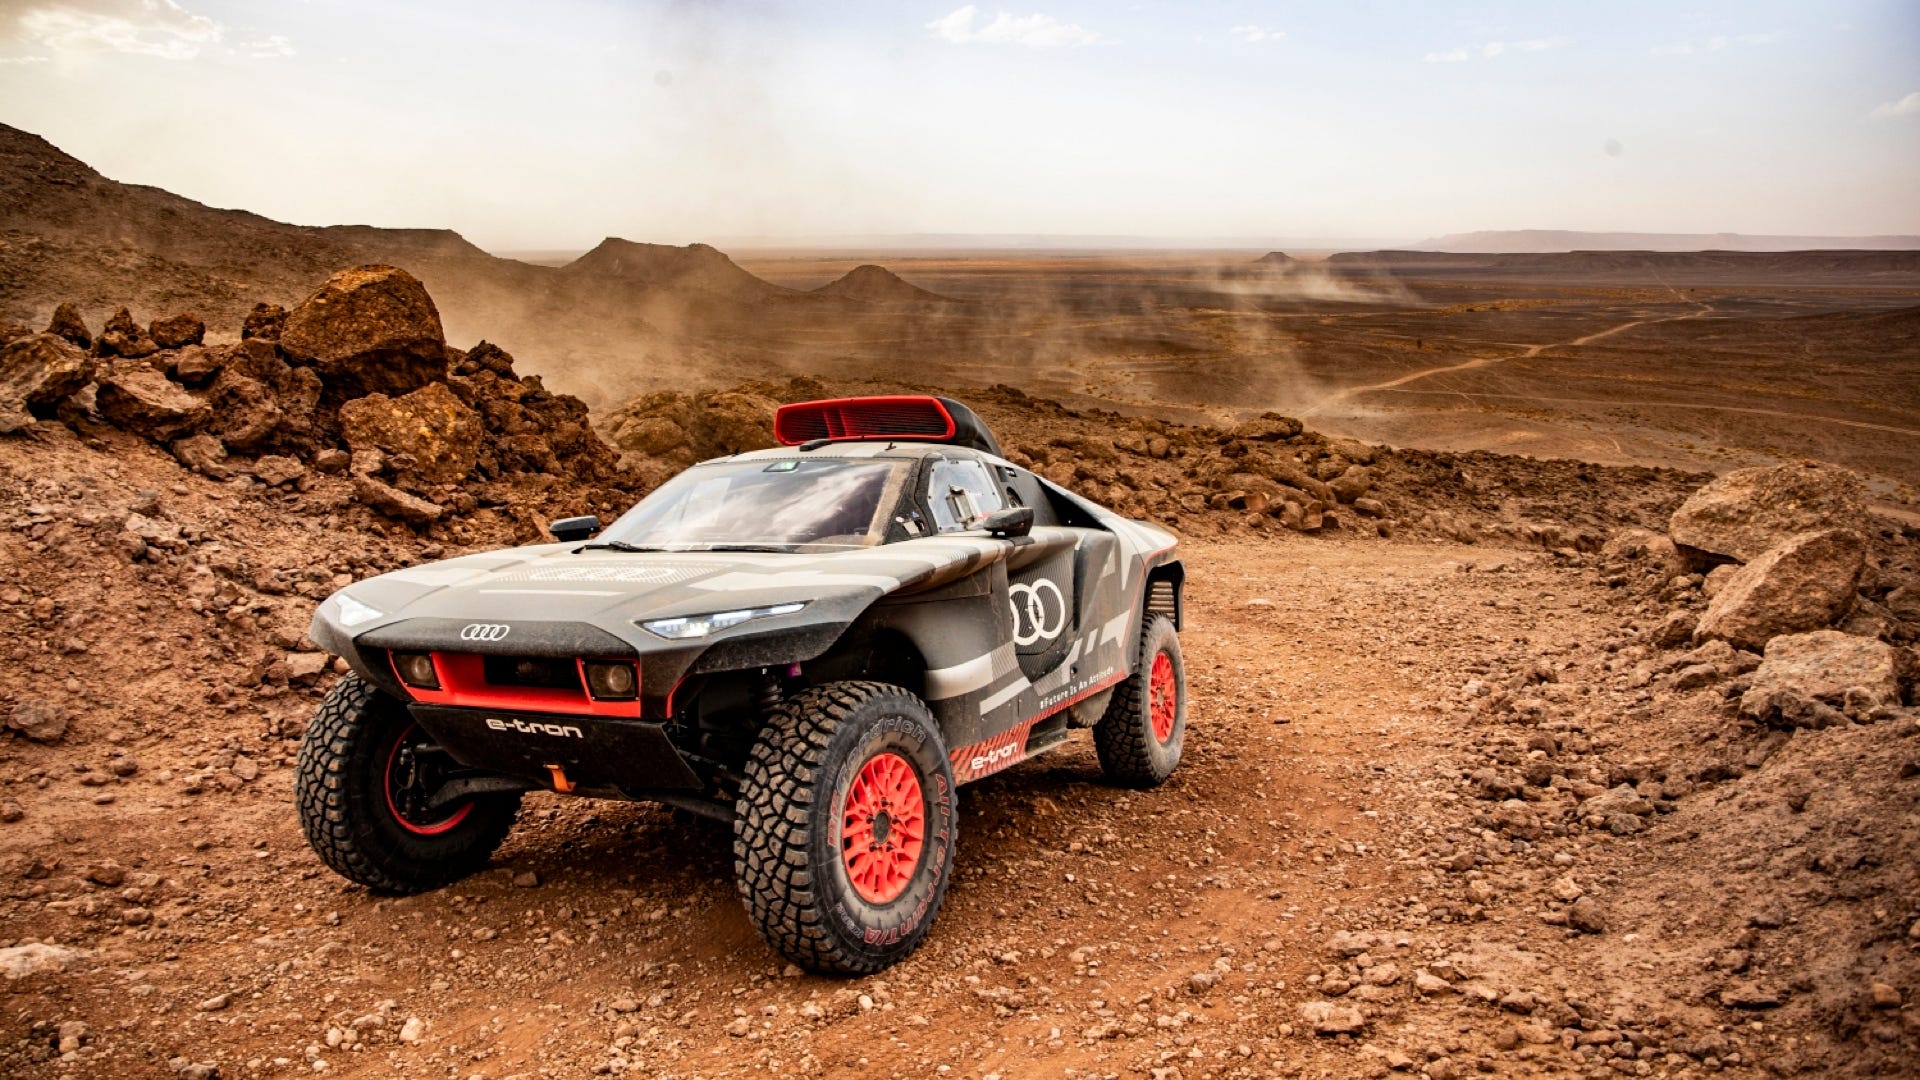 Audi đã đưa chiếc E-Tron Hybrid của mình đến sa mạc để kiểm tra độ bền cuối cùng